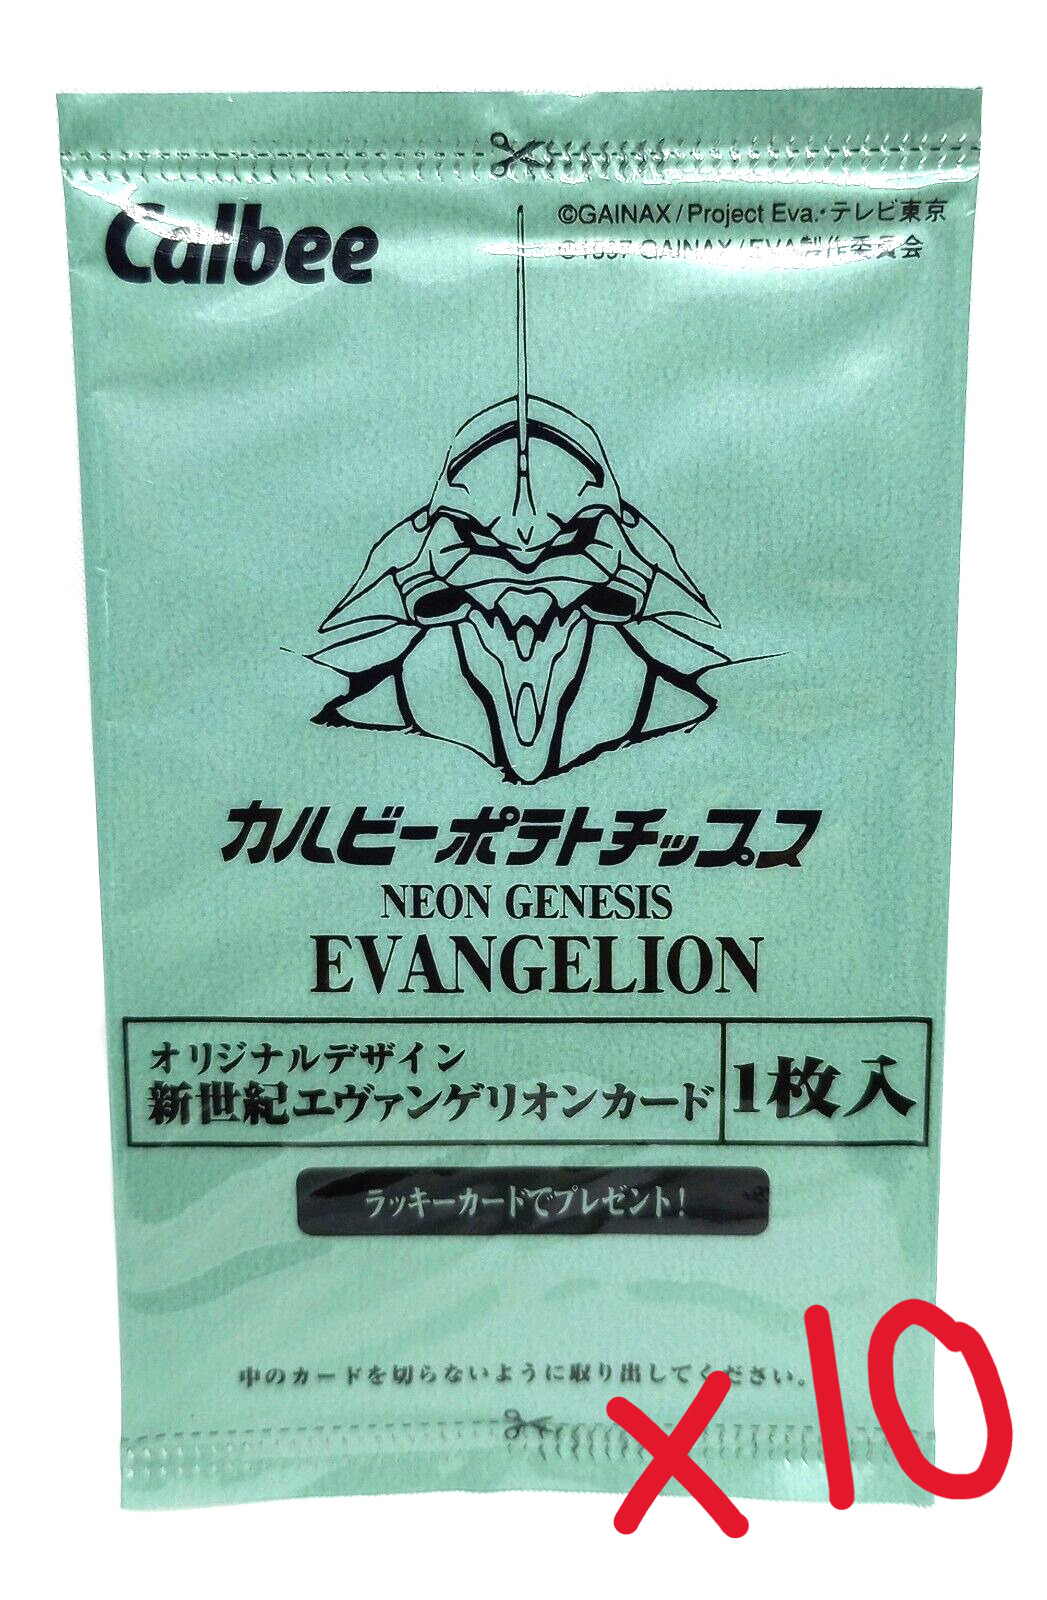 10x 1997 Neon Genesis Evangelion SEALED CALBEE CARD PACK chip bag promo LOT